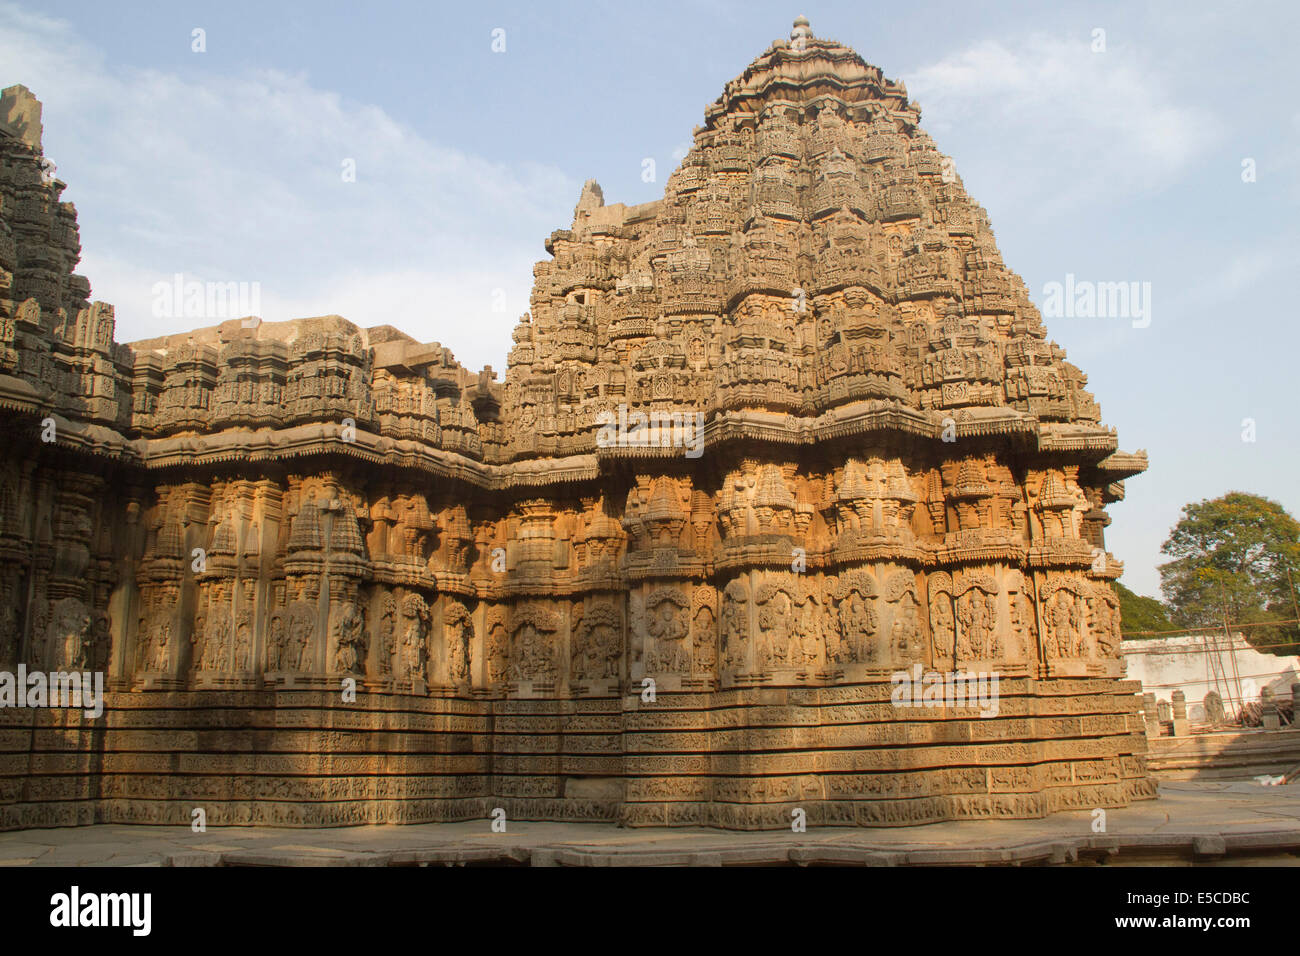 Keshava Temple couvert de la sculpture sur pierre construit en 1268 est l'un des meilleurs exemples de l'architecture.Somnathpur Hoyala,Inde Banque D'Images